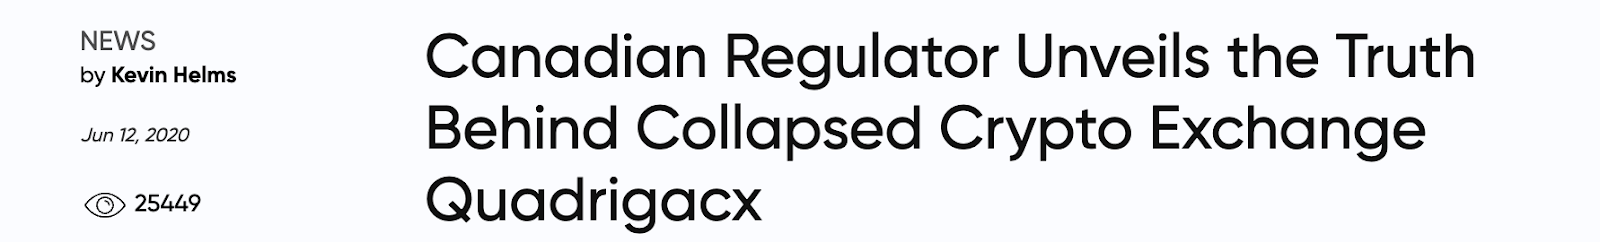 News headline on collapsed crypto exchange.